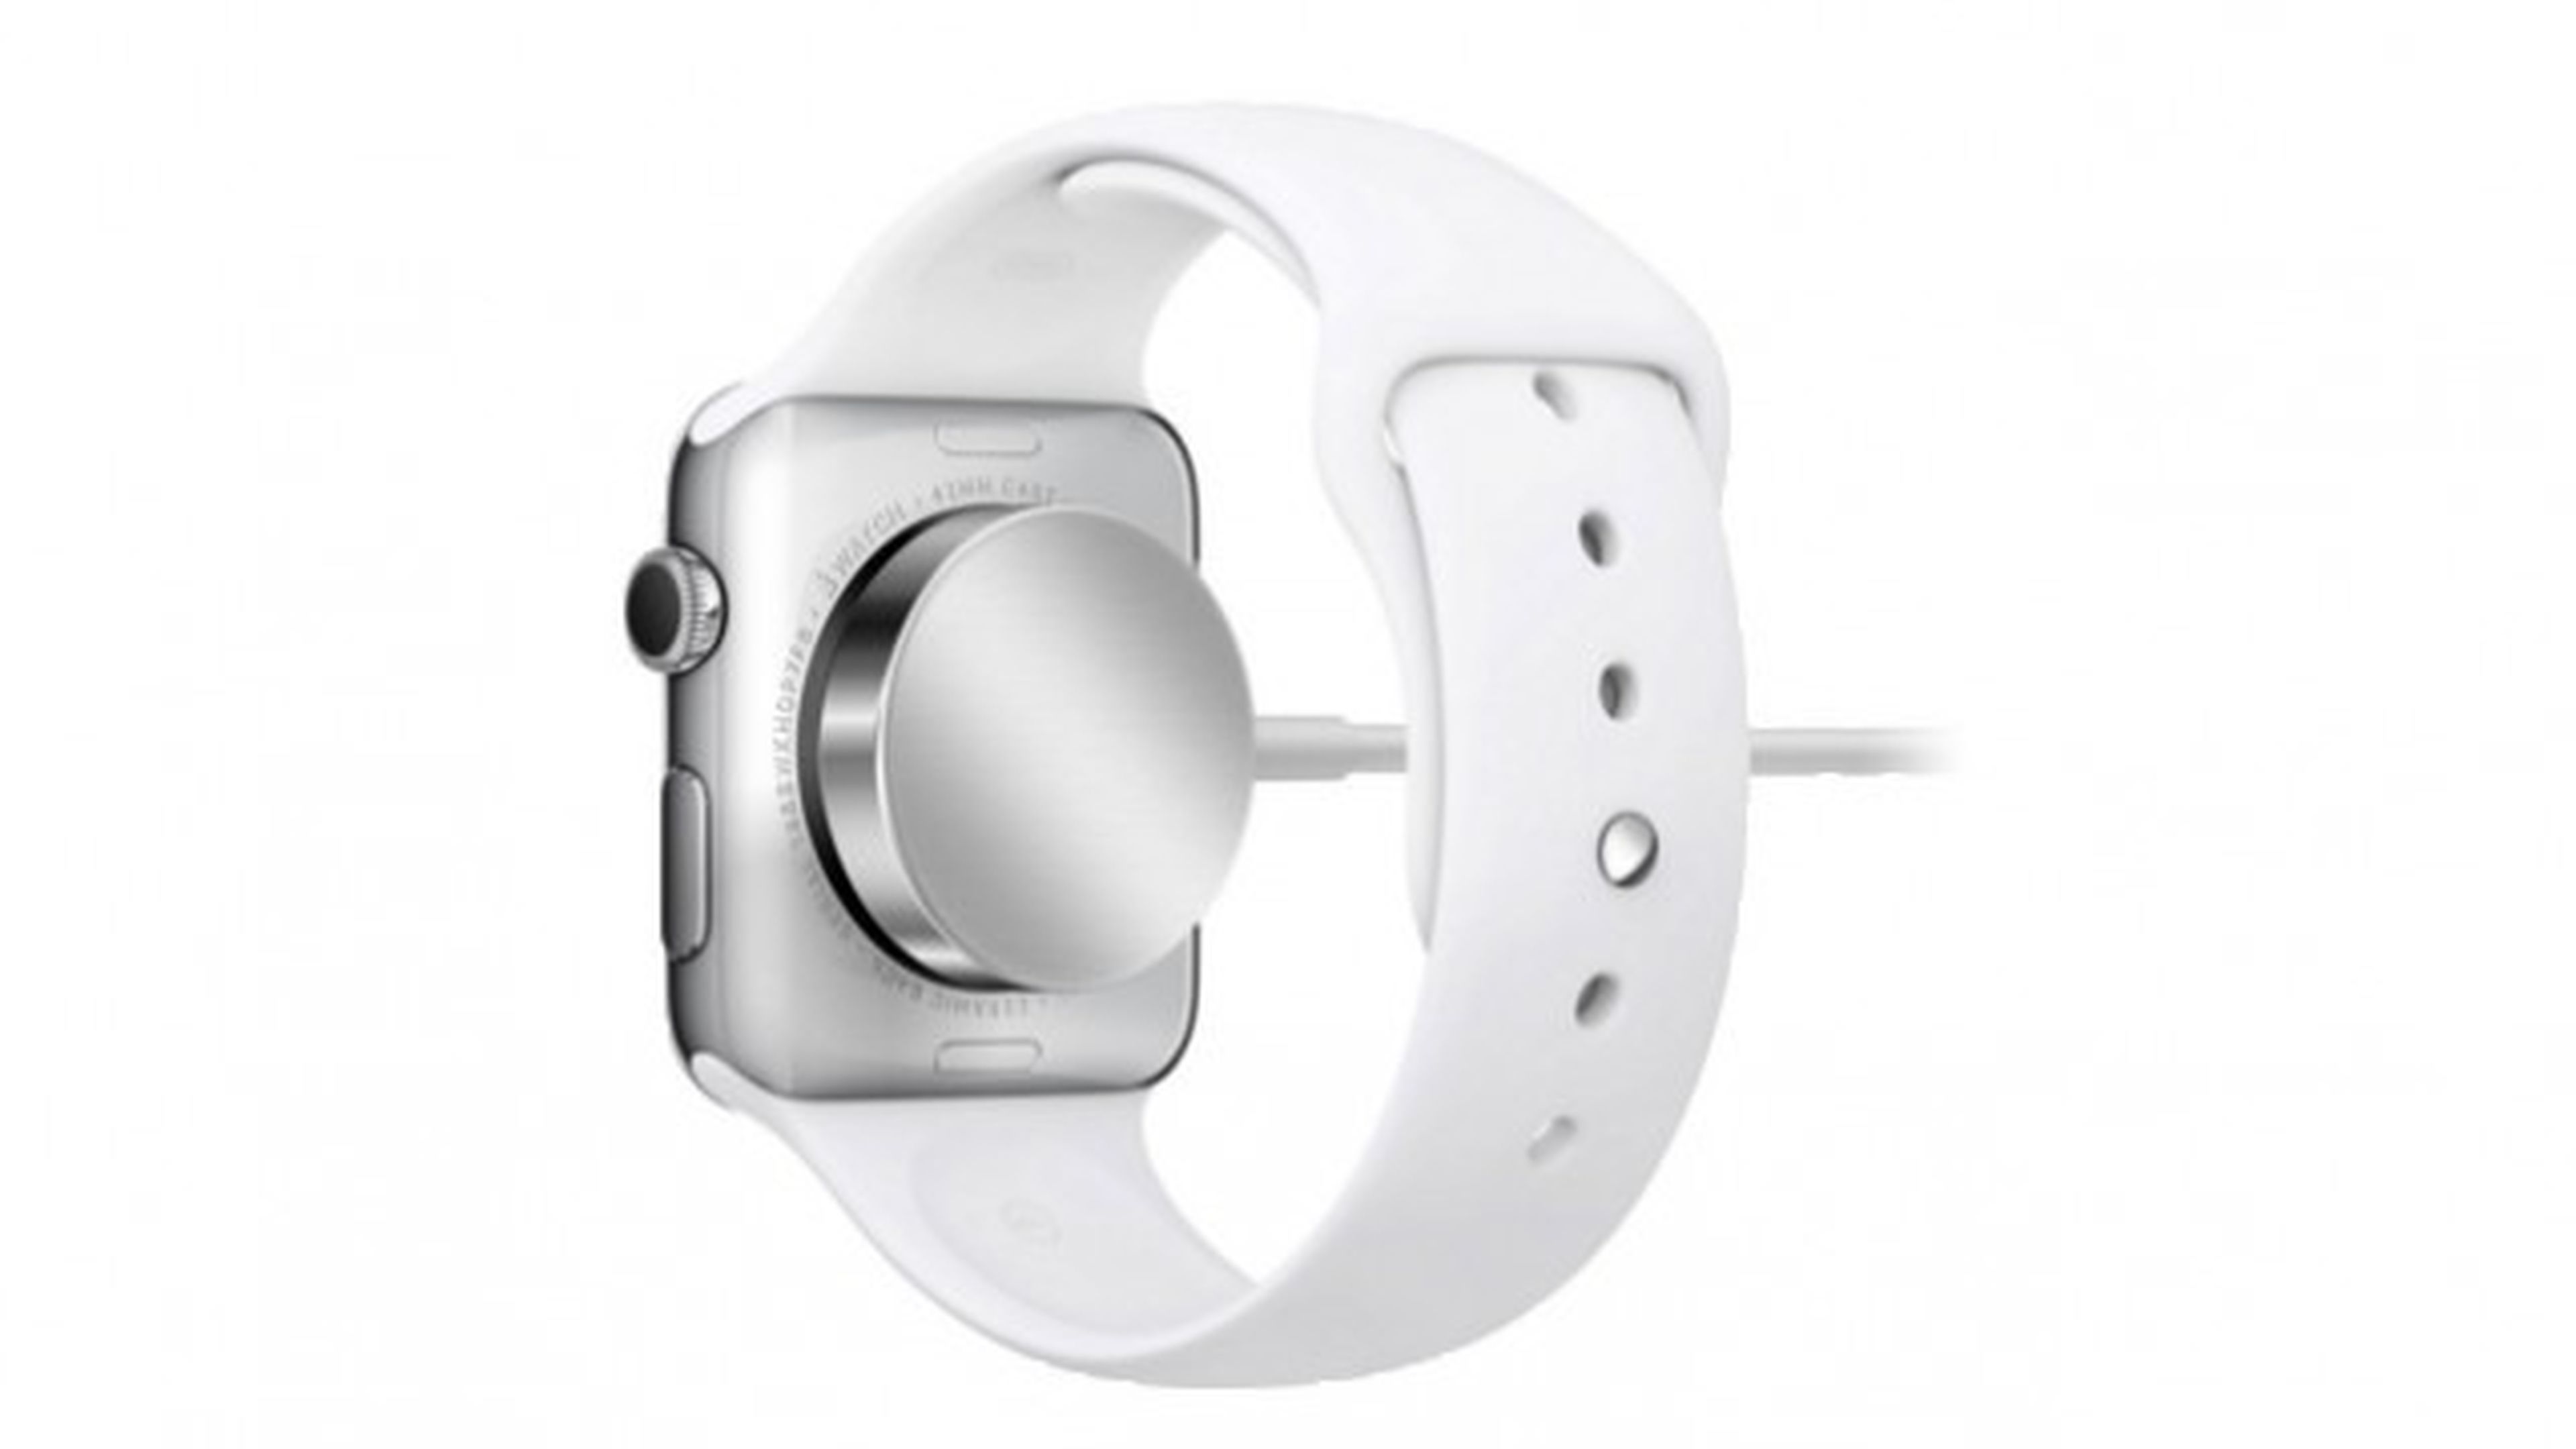 El nuevo dock para Apple Watch hace la recarga más fácil